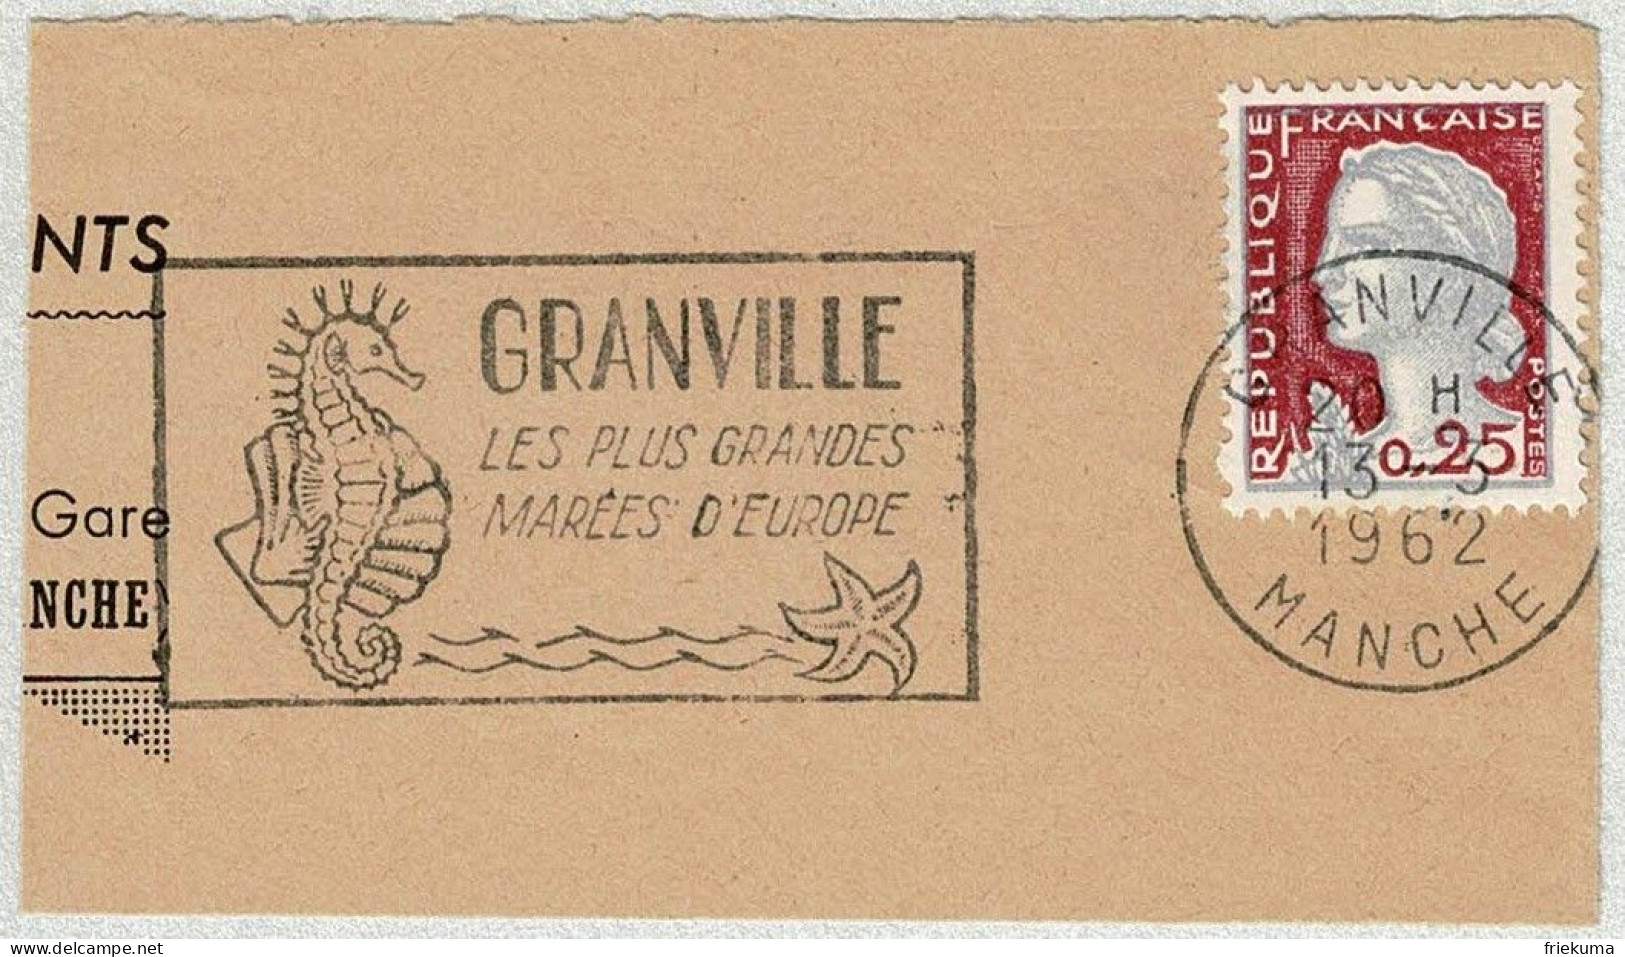 Frankreich / France 1962, Flaggenstempel Granville, Seepferdchen / Hippocampus, Seestern / Asteroidea, Gezeiten - Meereswelt